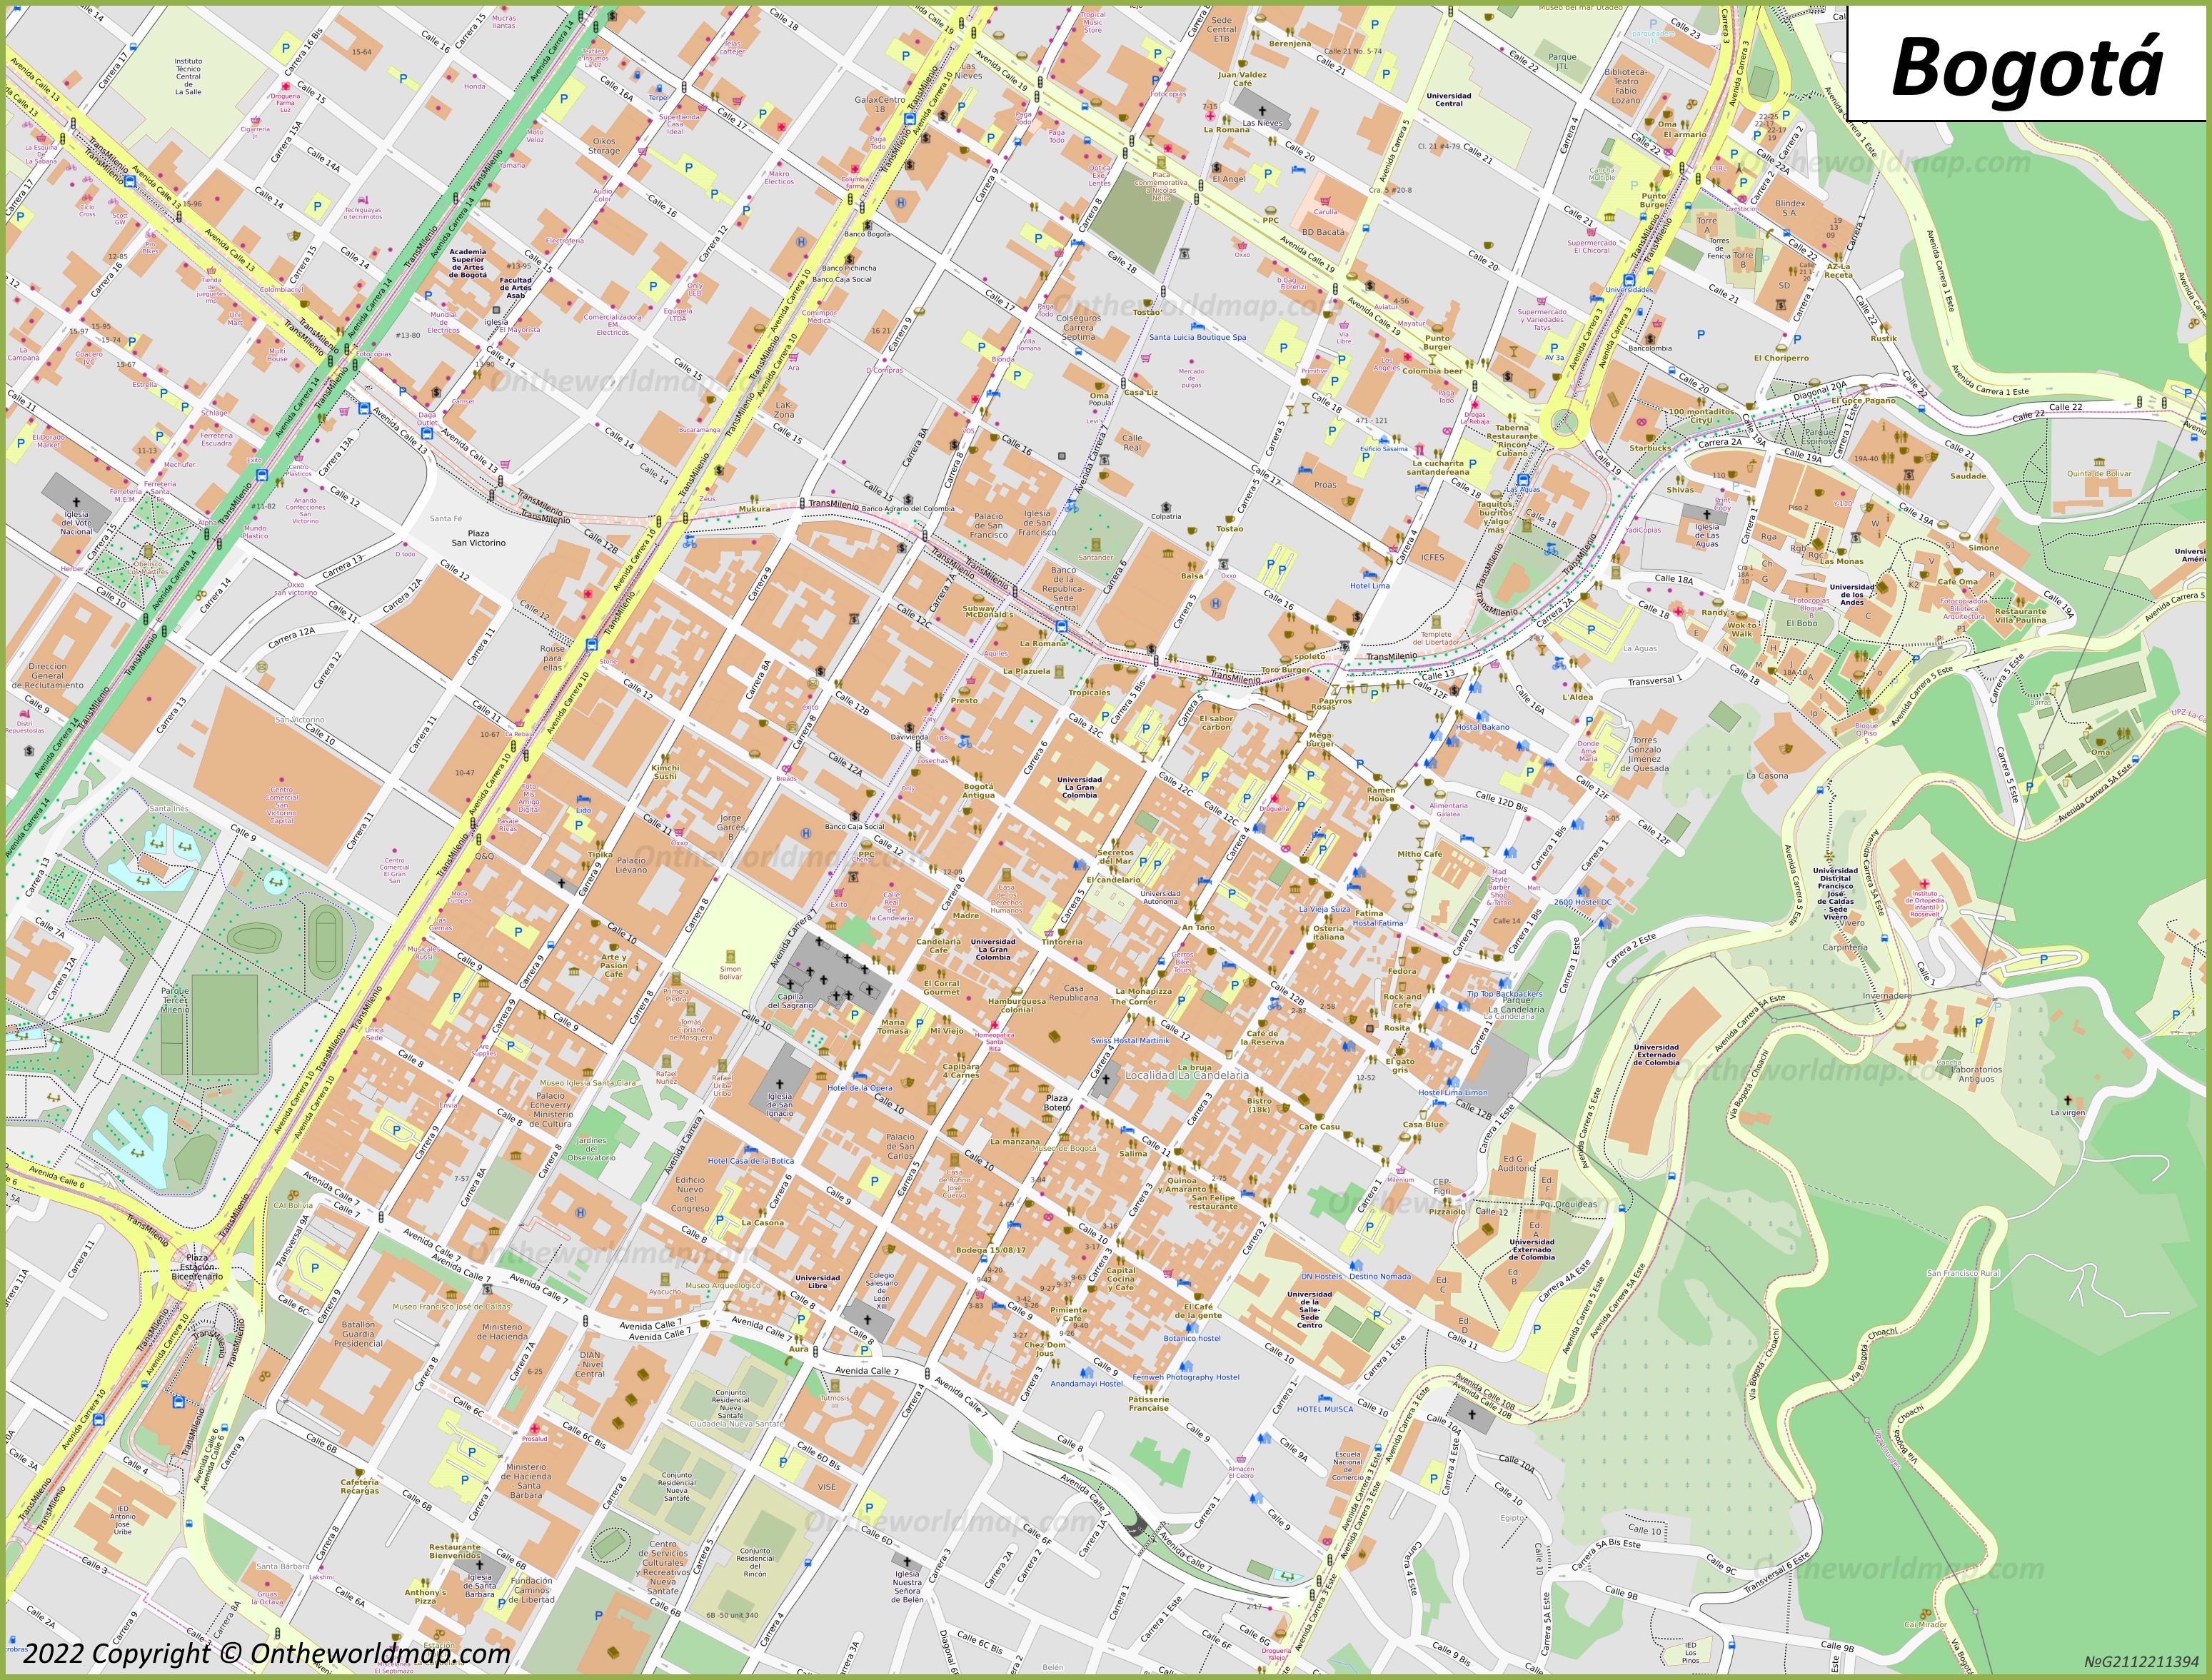 Bogotá City Centre Map